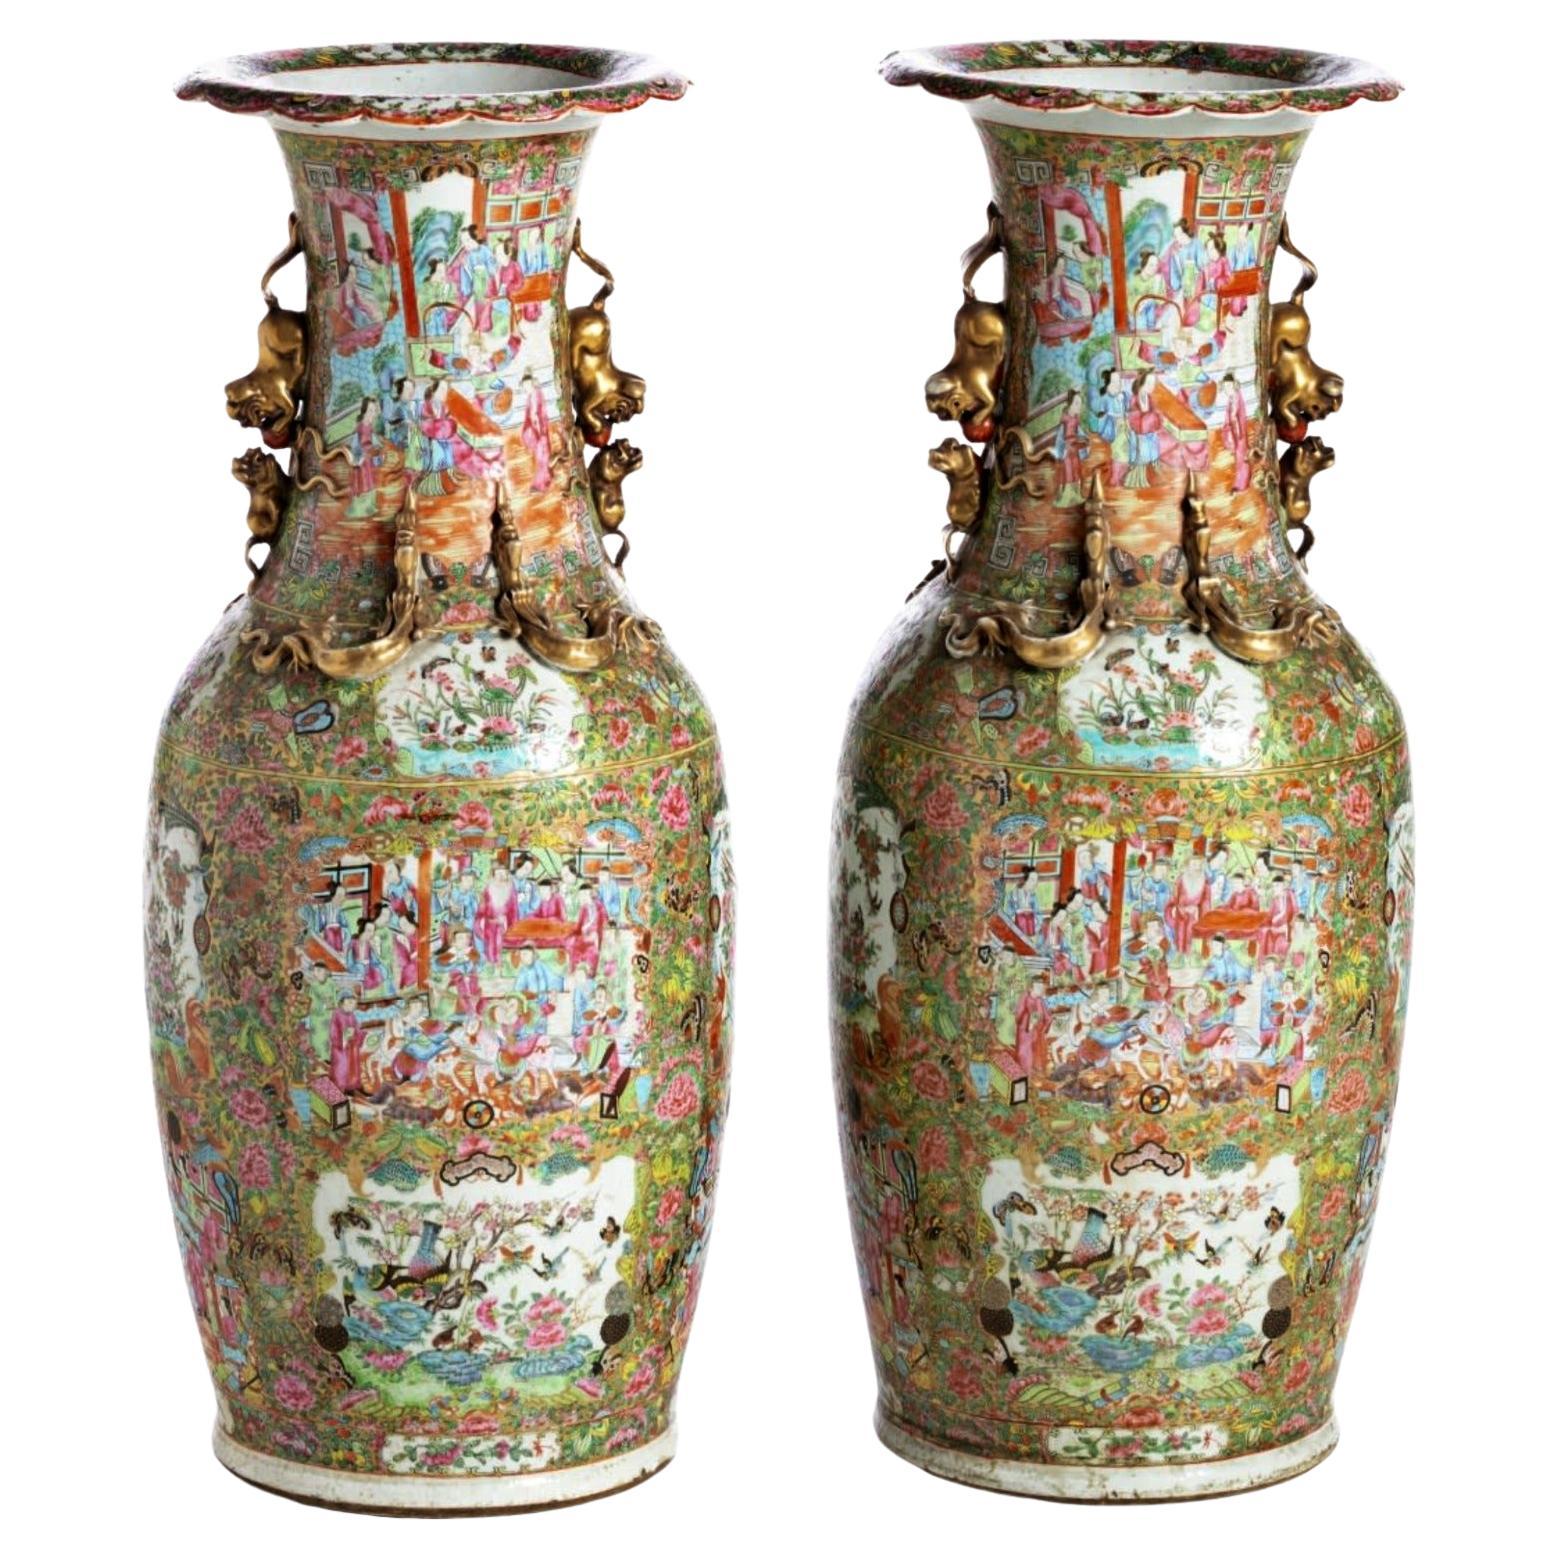 Beeindruckende chinesische Vasen aus dem Kanton Familia Rosa aus dem 19. Jahrhundert